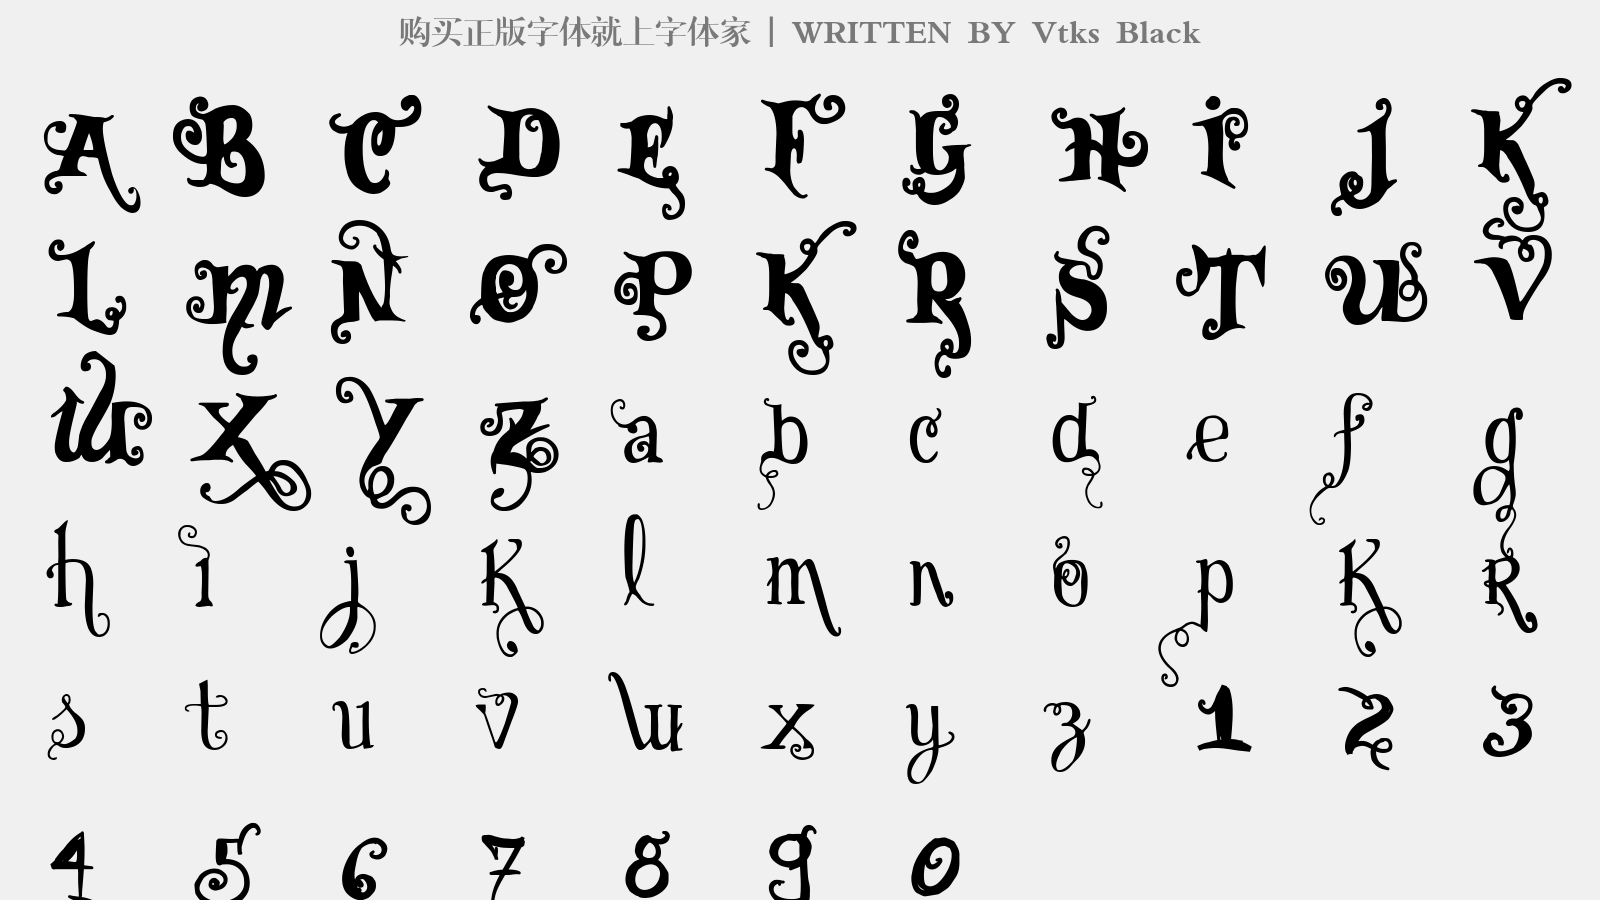 Vtks Black - 大写字母/小写字母/数字